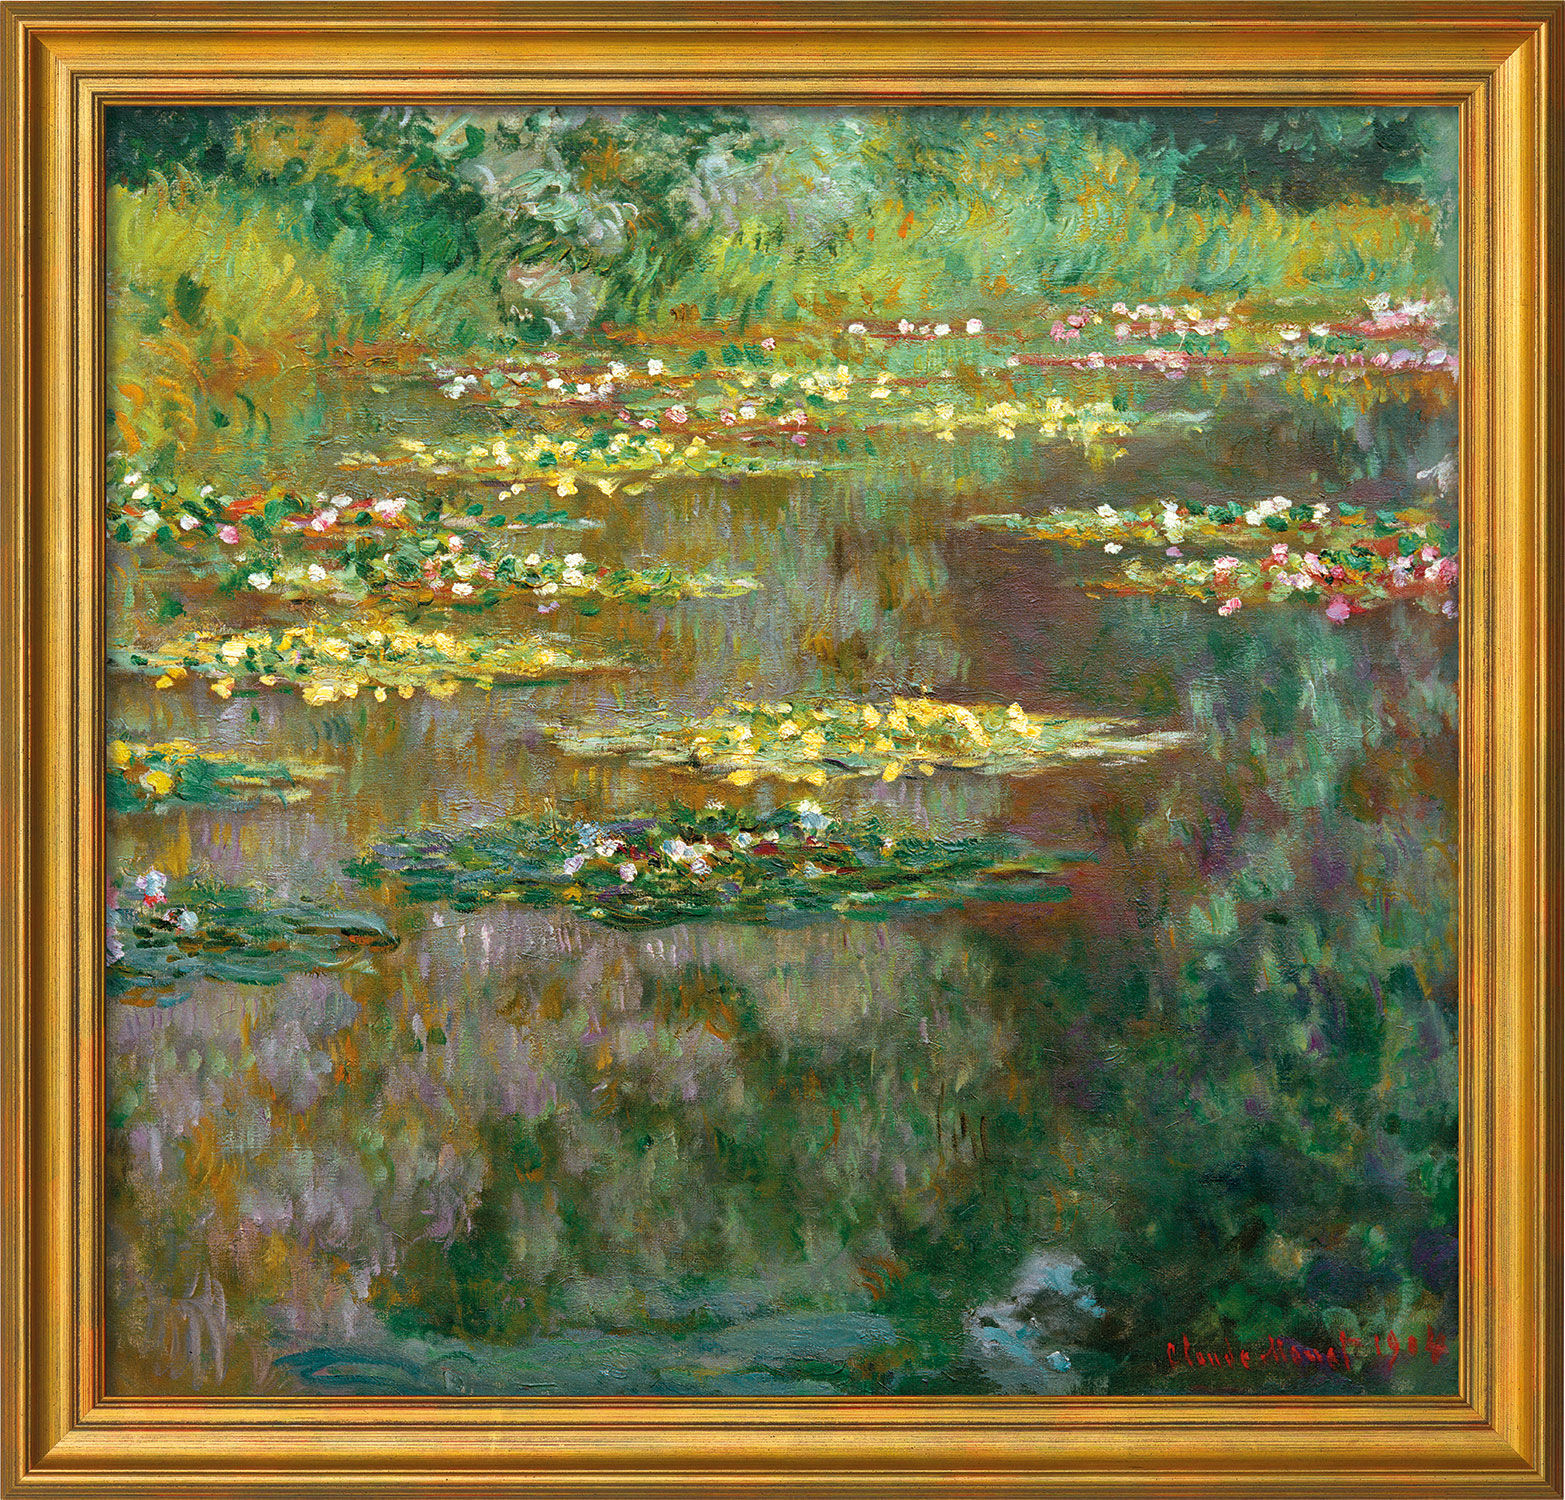 Beeld "Nymphéas" (1904), ingelijst von Claude Monet